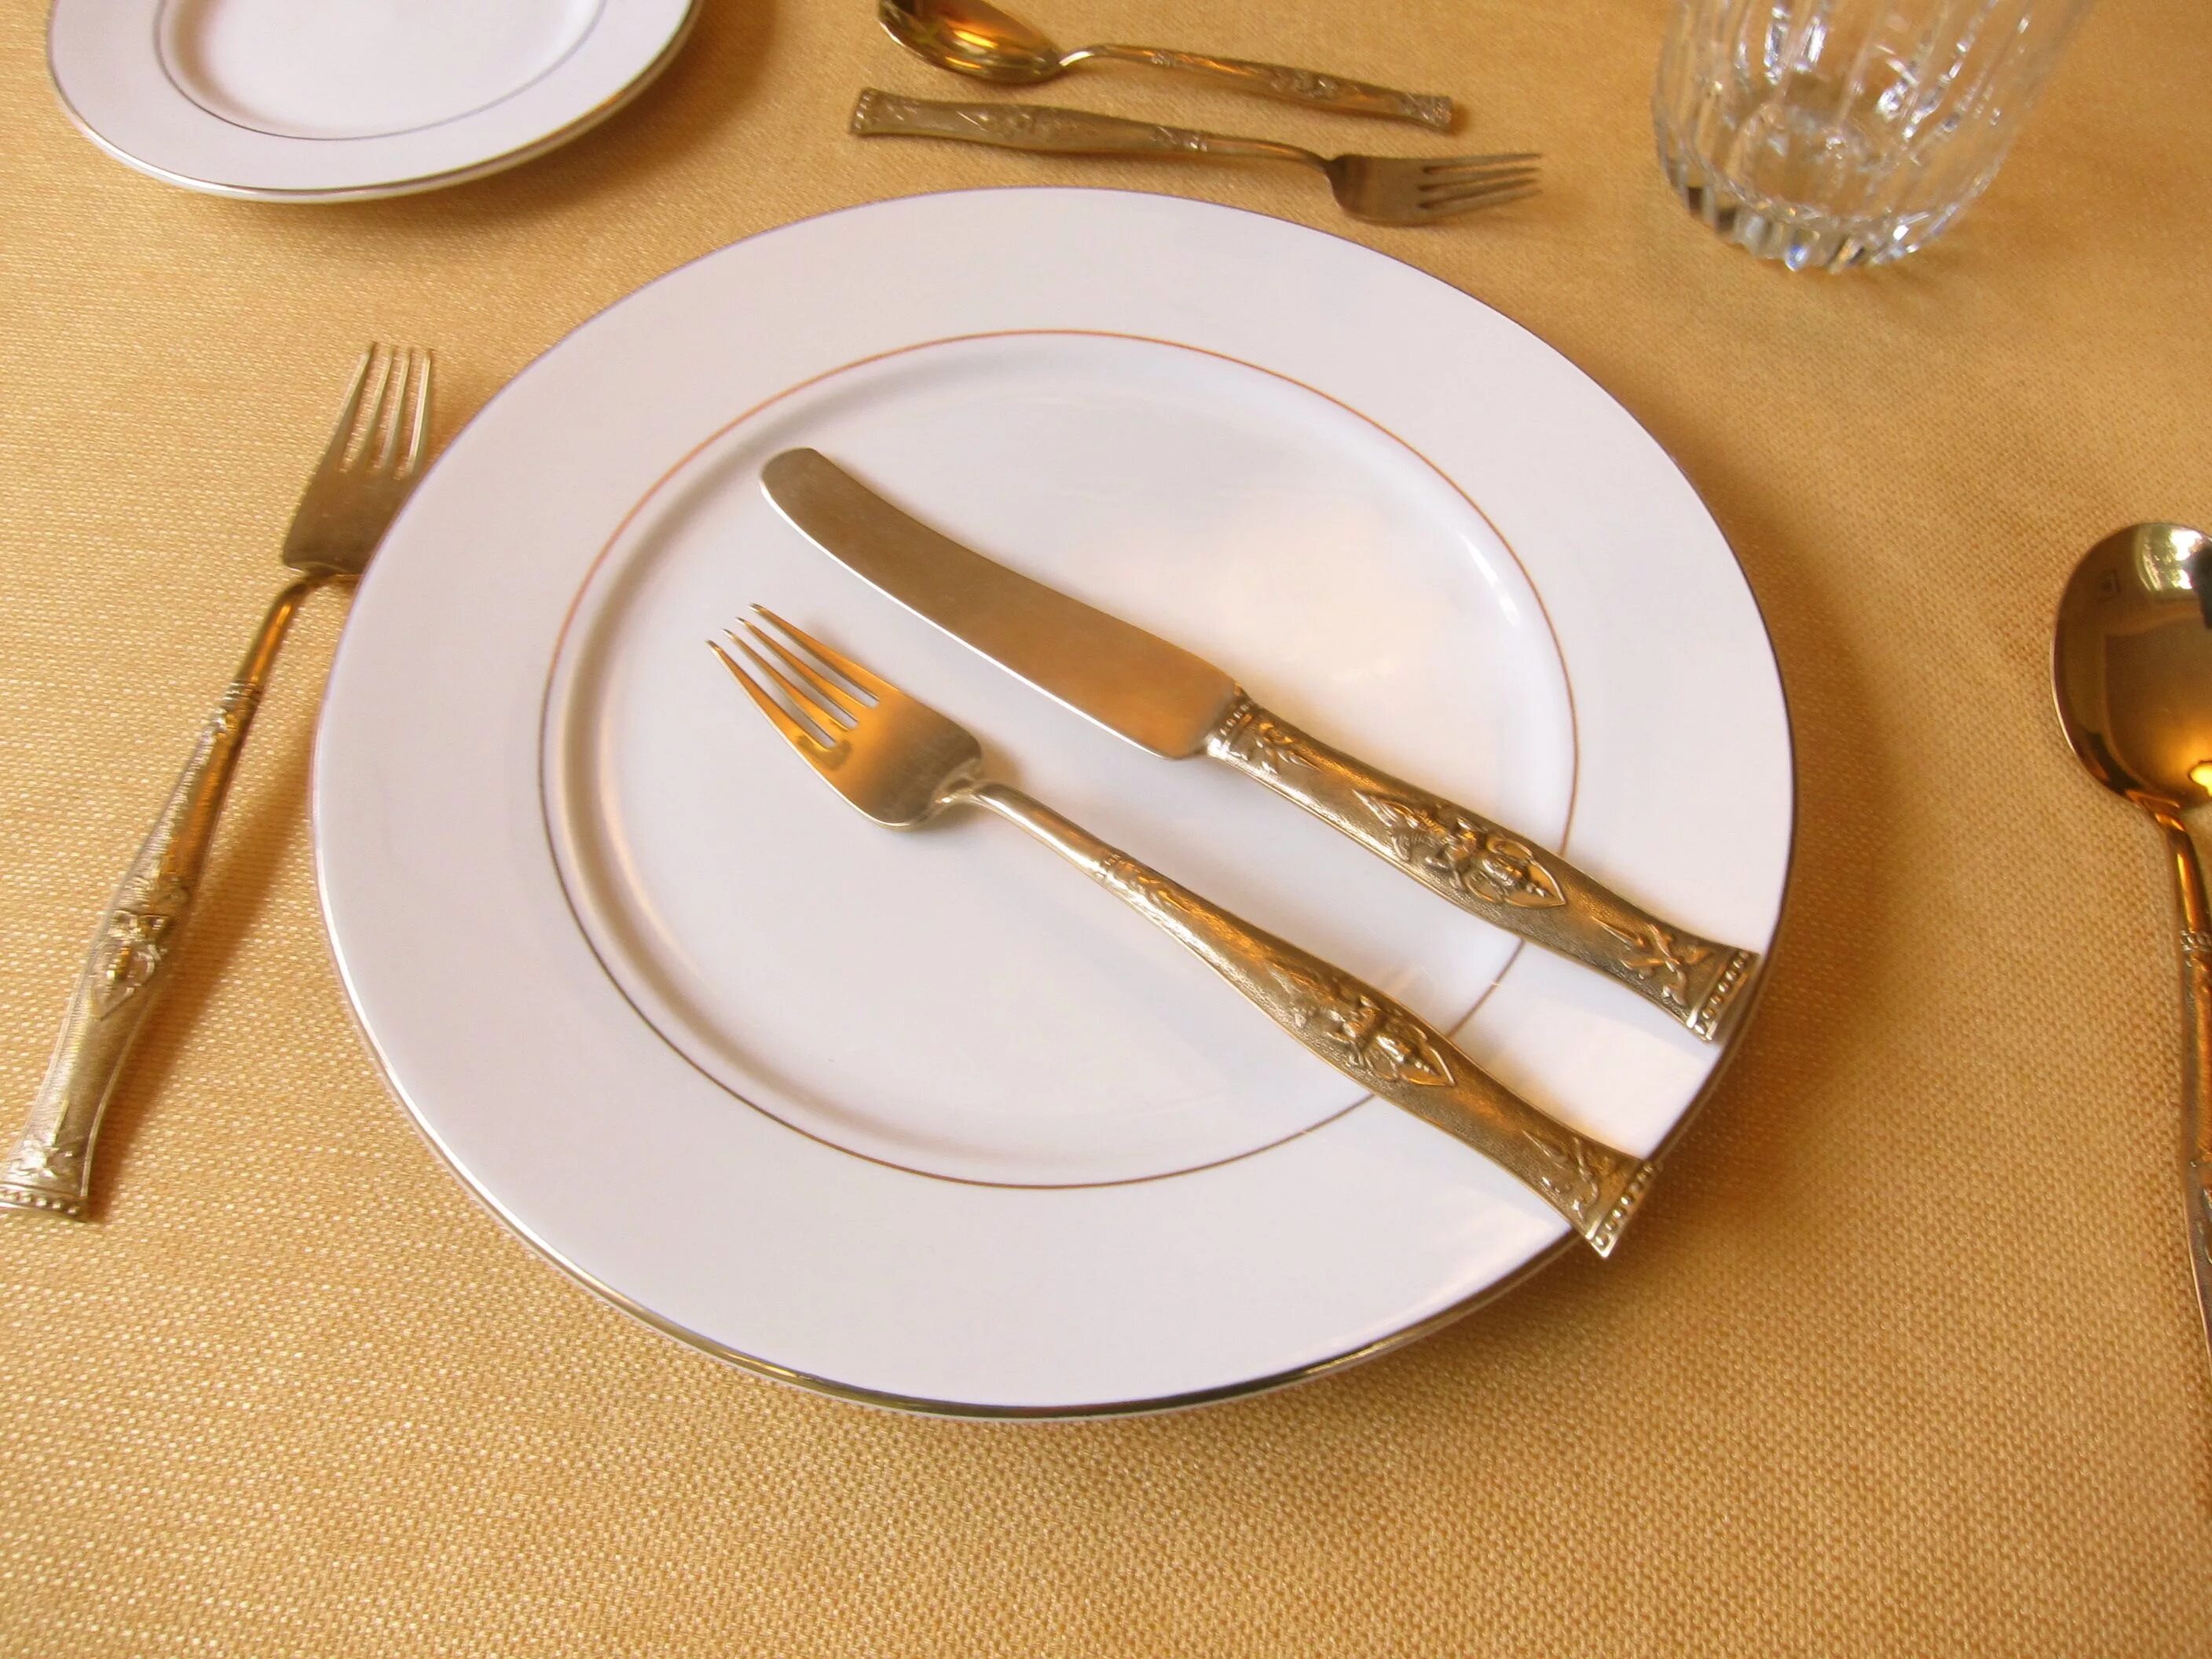 Как должны располагаться вилки ножи относительно тарелки. Сервировка столовых приборов. Столовые приборы на столе. Сервировка стола нож и вилка. Столовые приборы на тарелке.